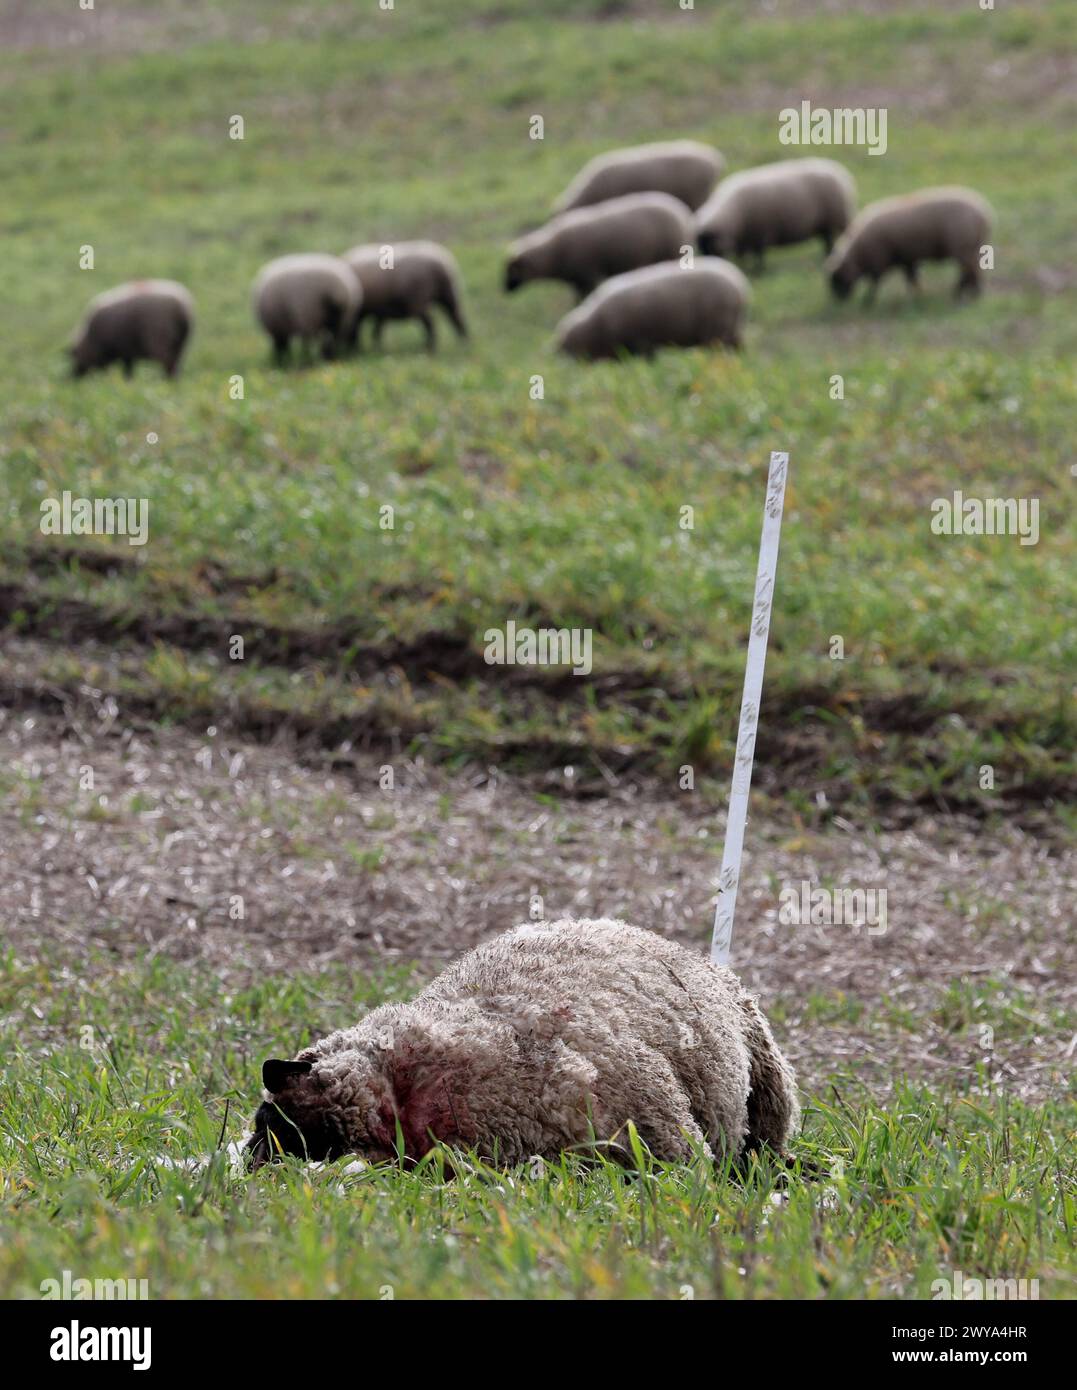 5 aprile 2024, Meclemburgo-Pomerania occidentale, Bad Sülze: Una pecora morta del gregge del pastore Ingo Stoll giace nel prato, altri animali pascolano sullo sfondo. In quello che si ritiene essere il terzo attacco da parte dei lupi quest'anno, 19 animali del gregge sono stati uccisi. Foto: Bernd Wüstneck/dpa Foto Stock